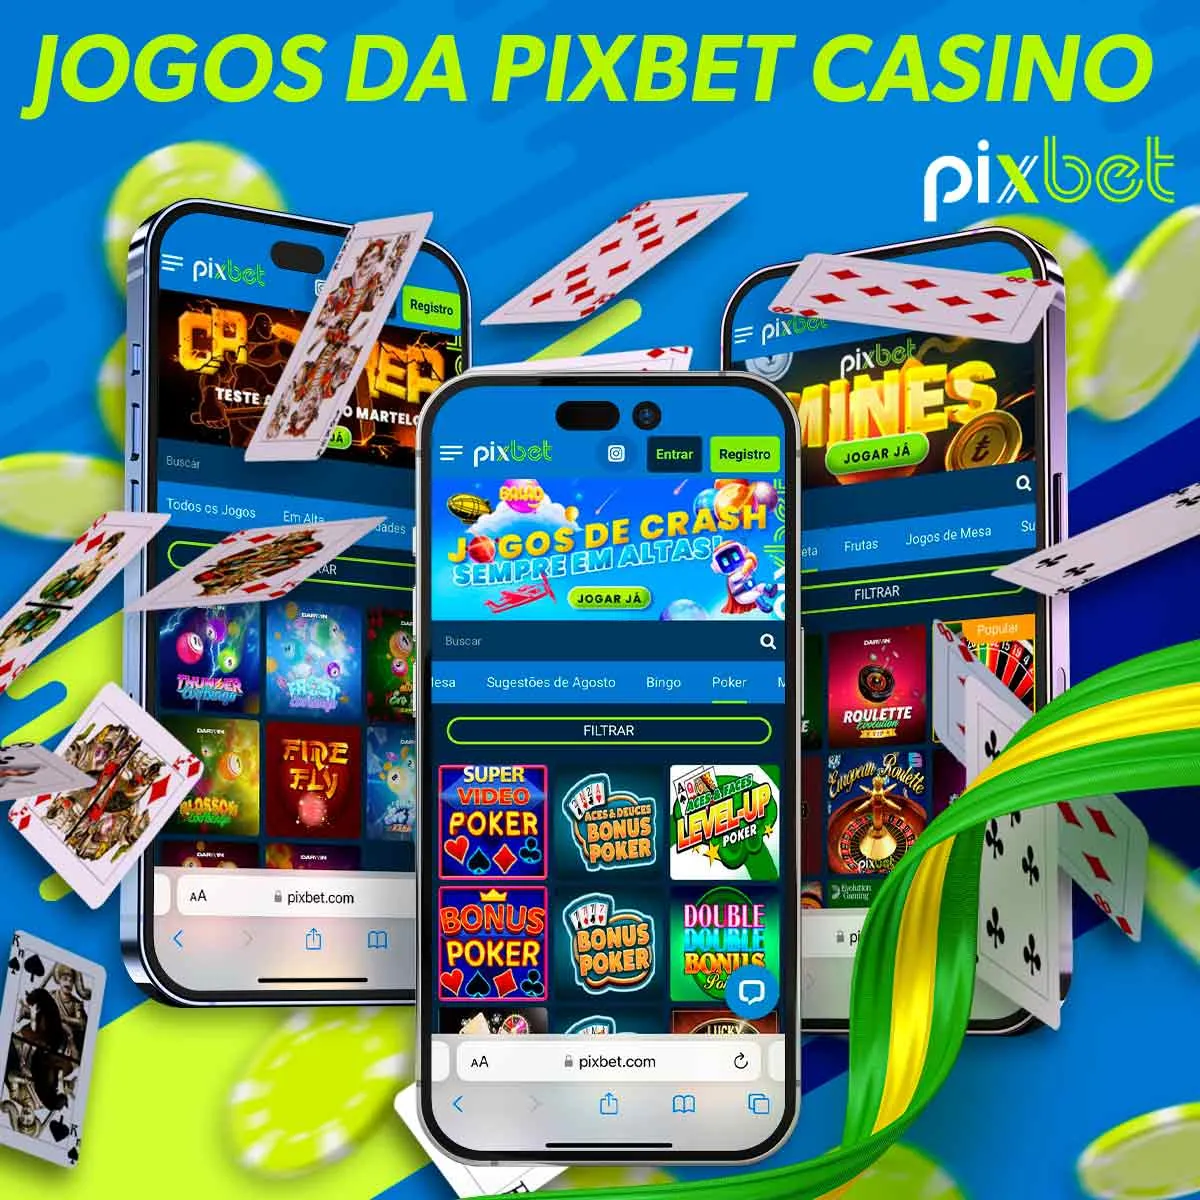 Jogos de cassino Pixbet Brasil no aplicativo Pixbet